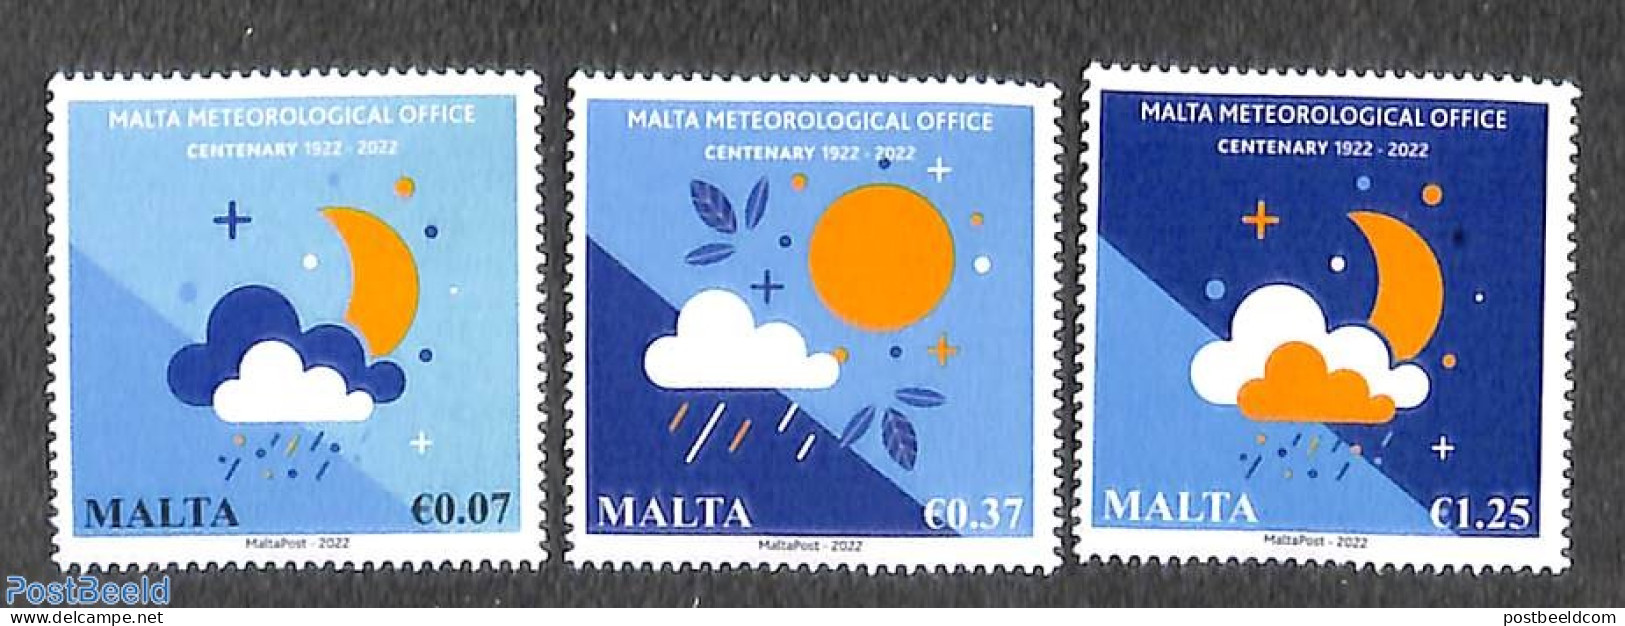 Malta 2022 Centenary Of Meteorological Office 3v, Mint NH, Science - Meteorology - Klimaat & Meteorologie